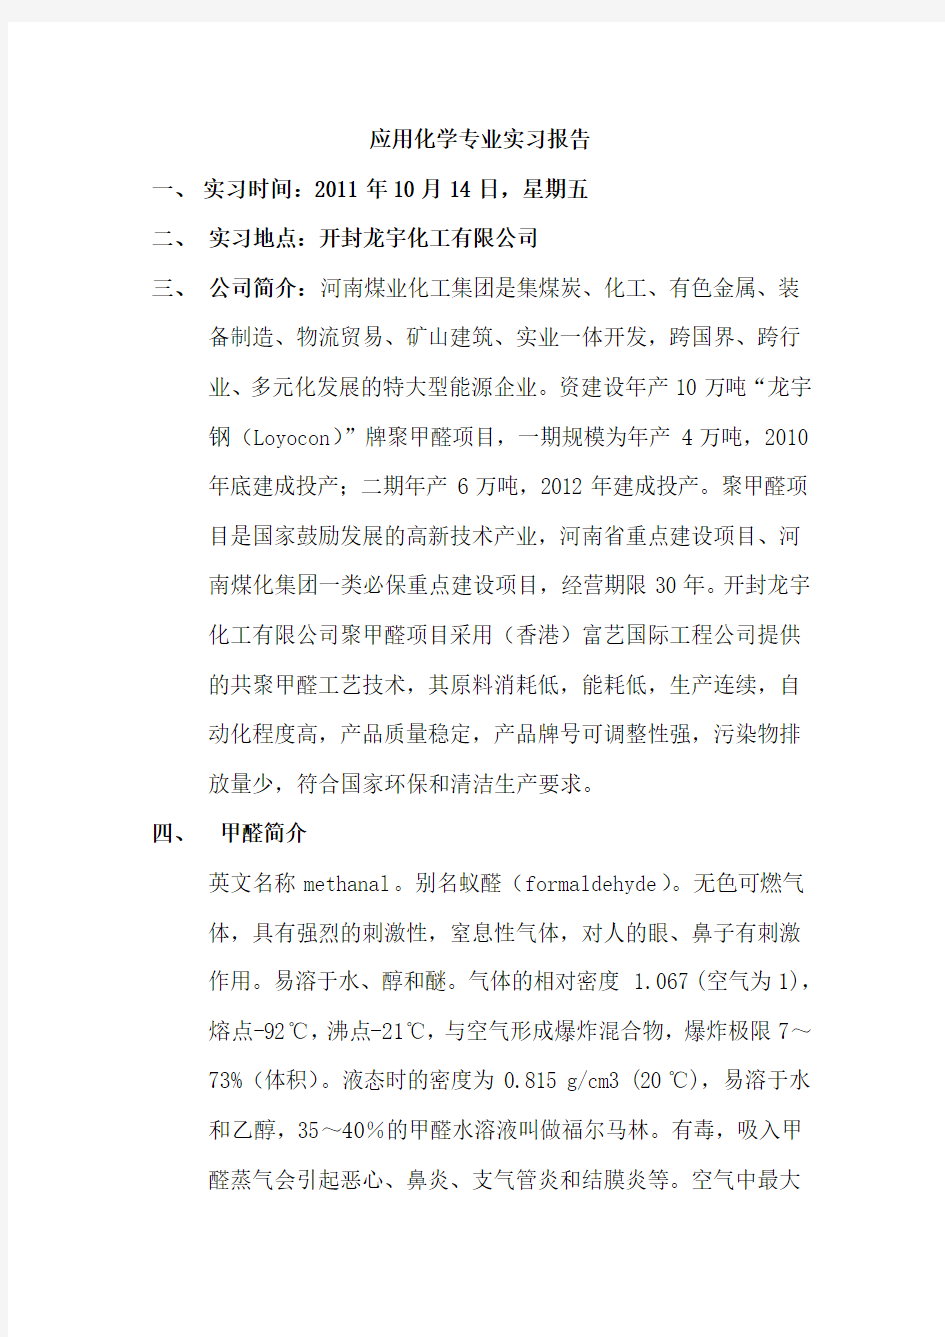 河南煤化集团开封龙宇化工有限公司